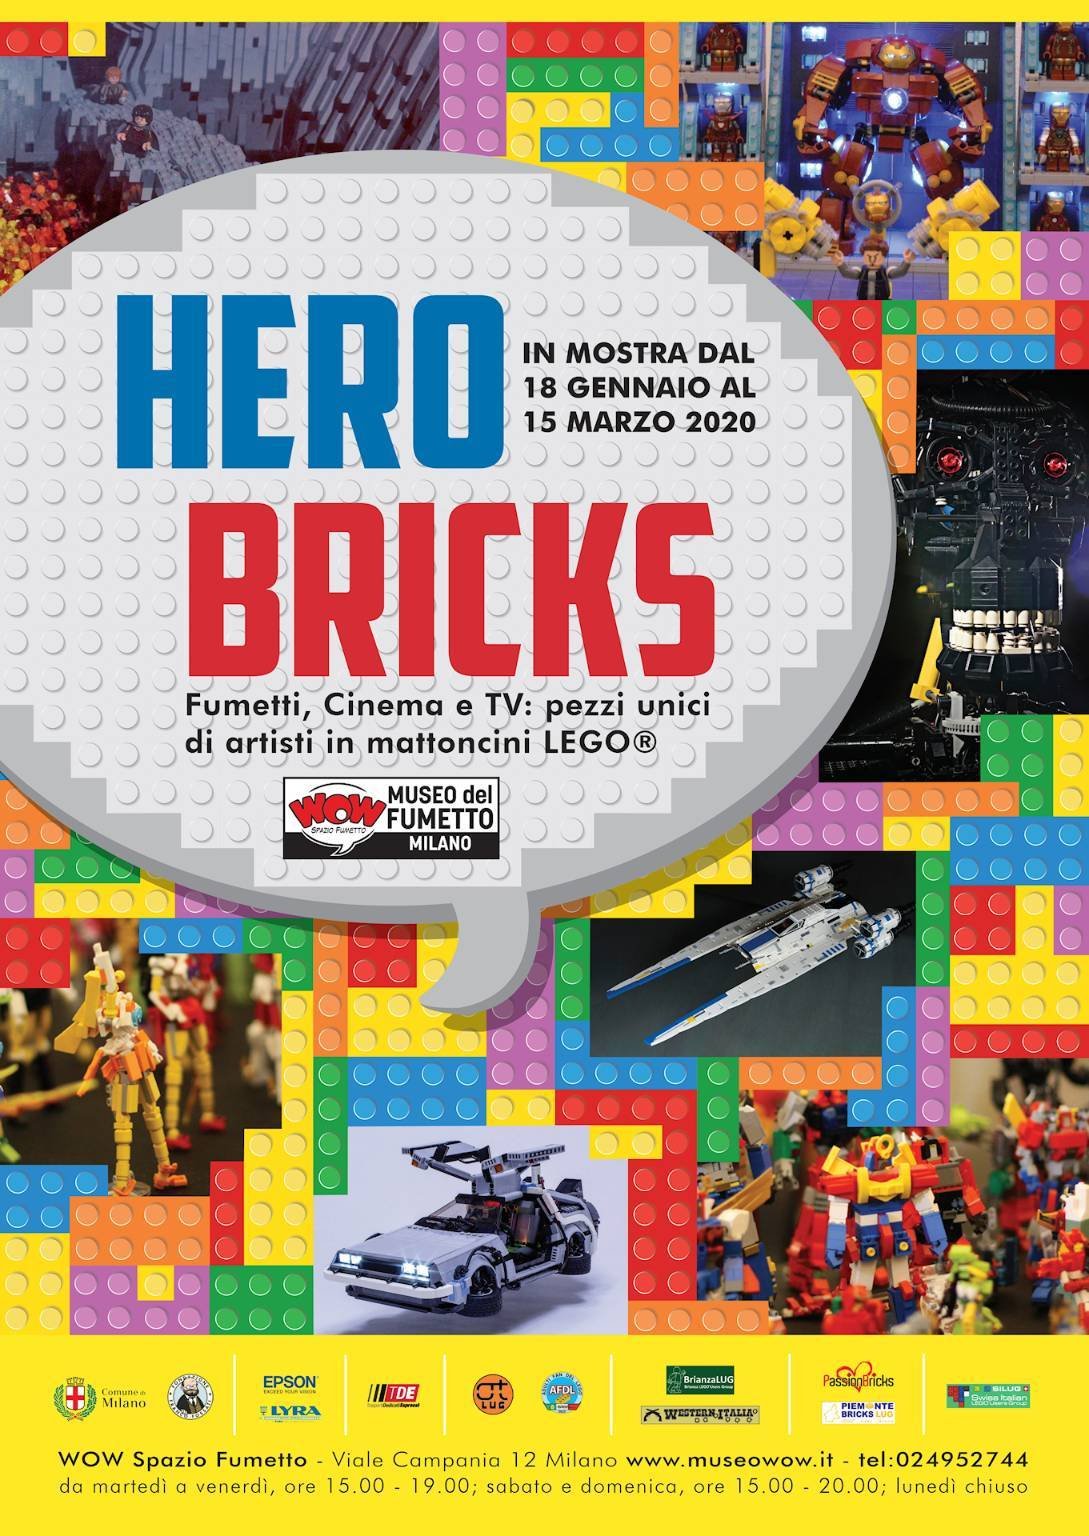 Immagine di HERO BRICKS: la mostra debutta a Milano il 18 gennaio 2020